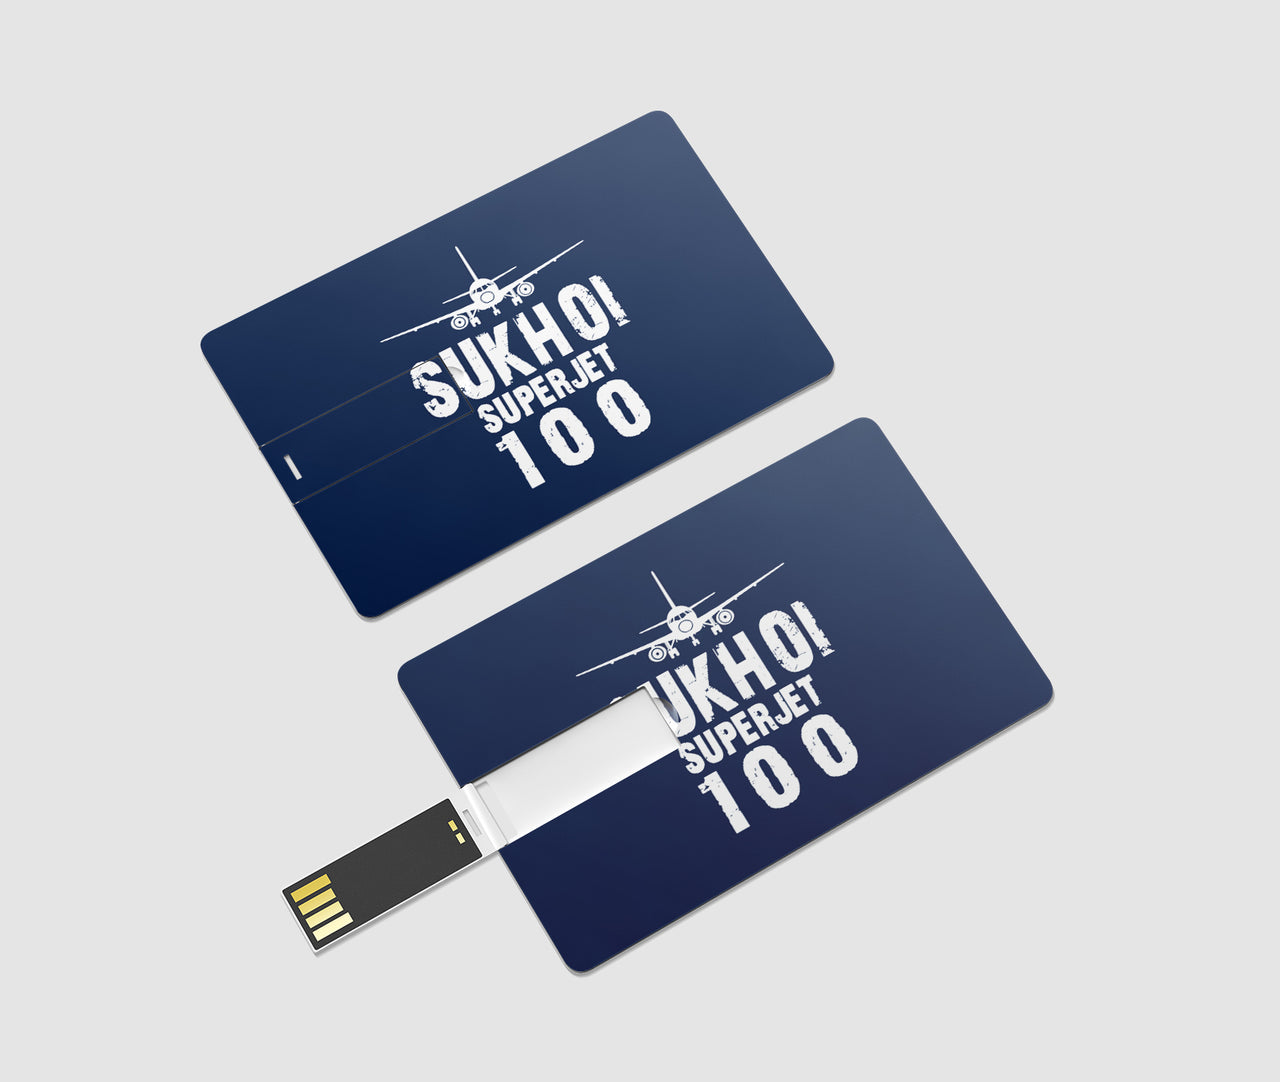 Sukhoi Superjet 100 & Plane Designed USB Cards